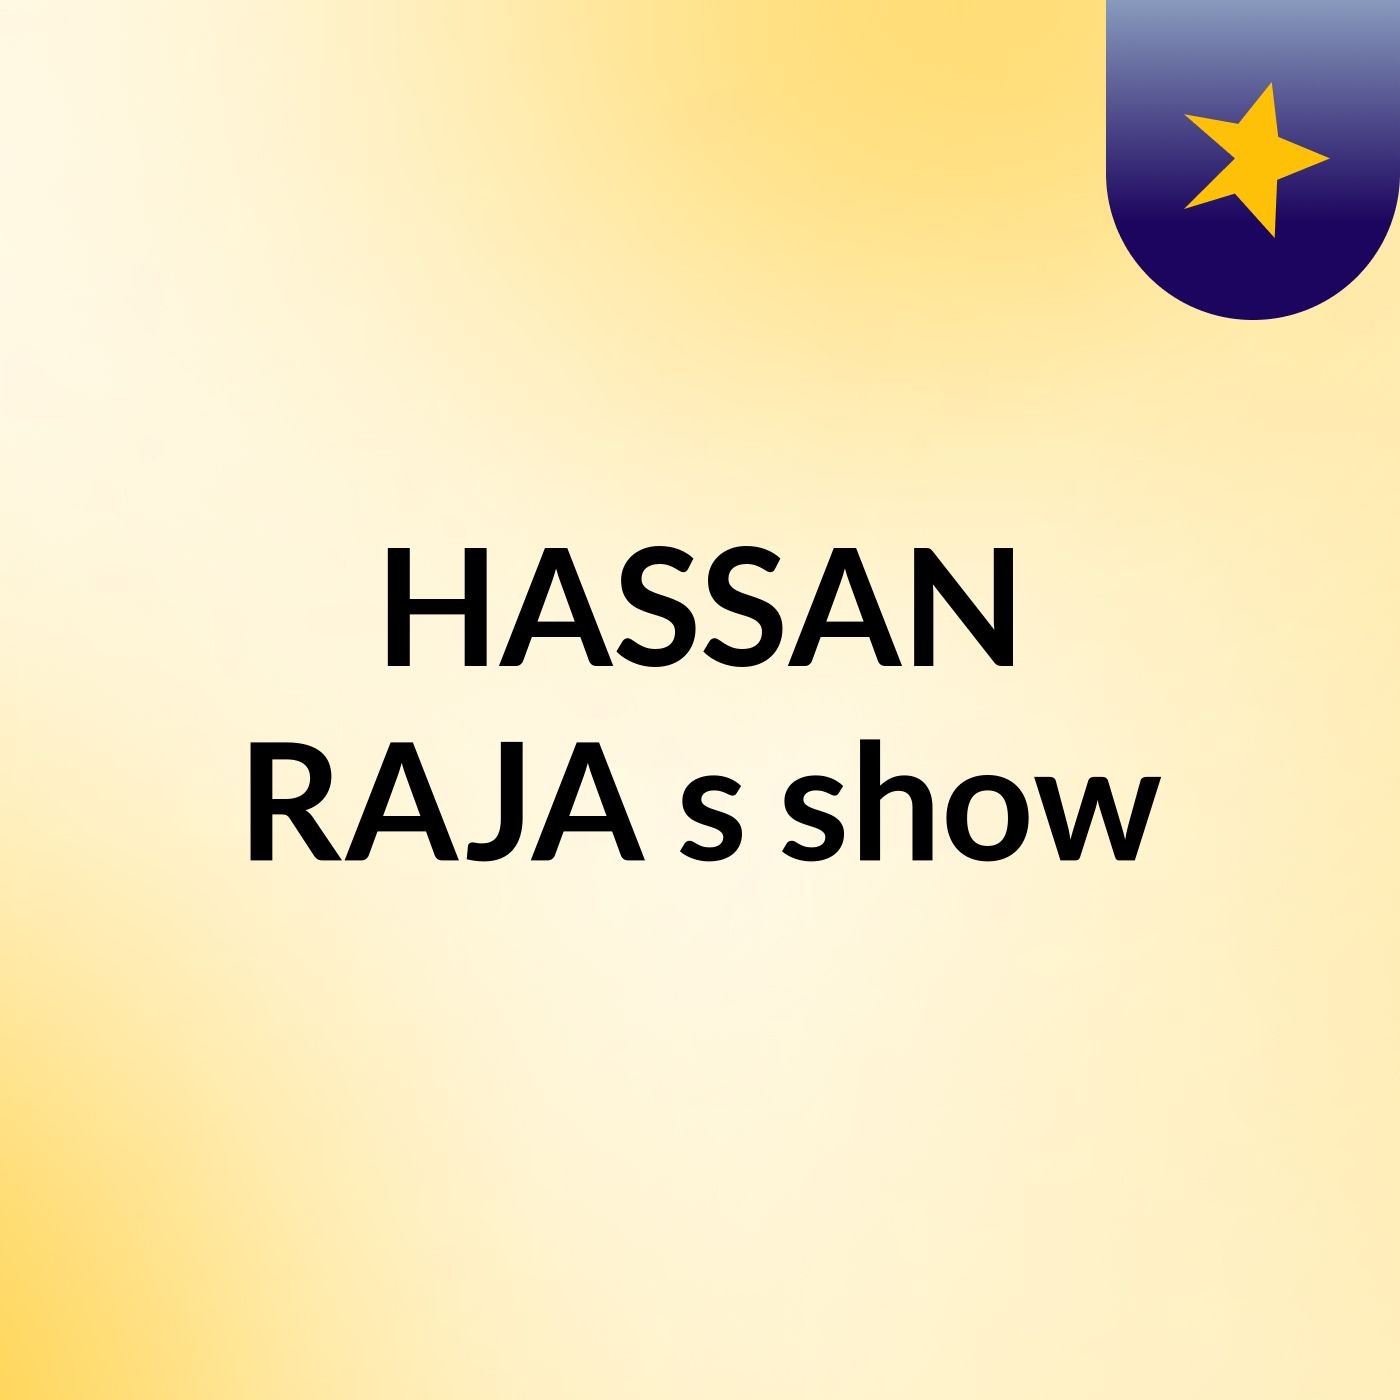 HASSAN RAJA's show